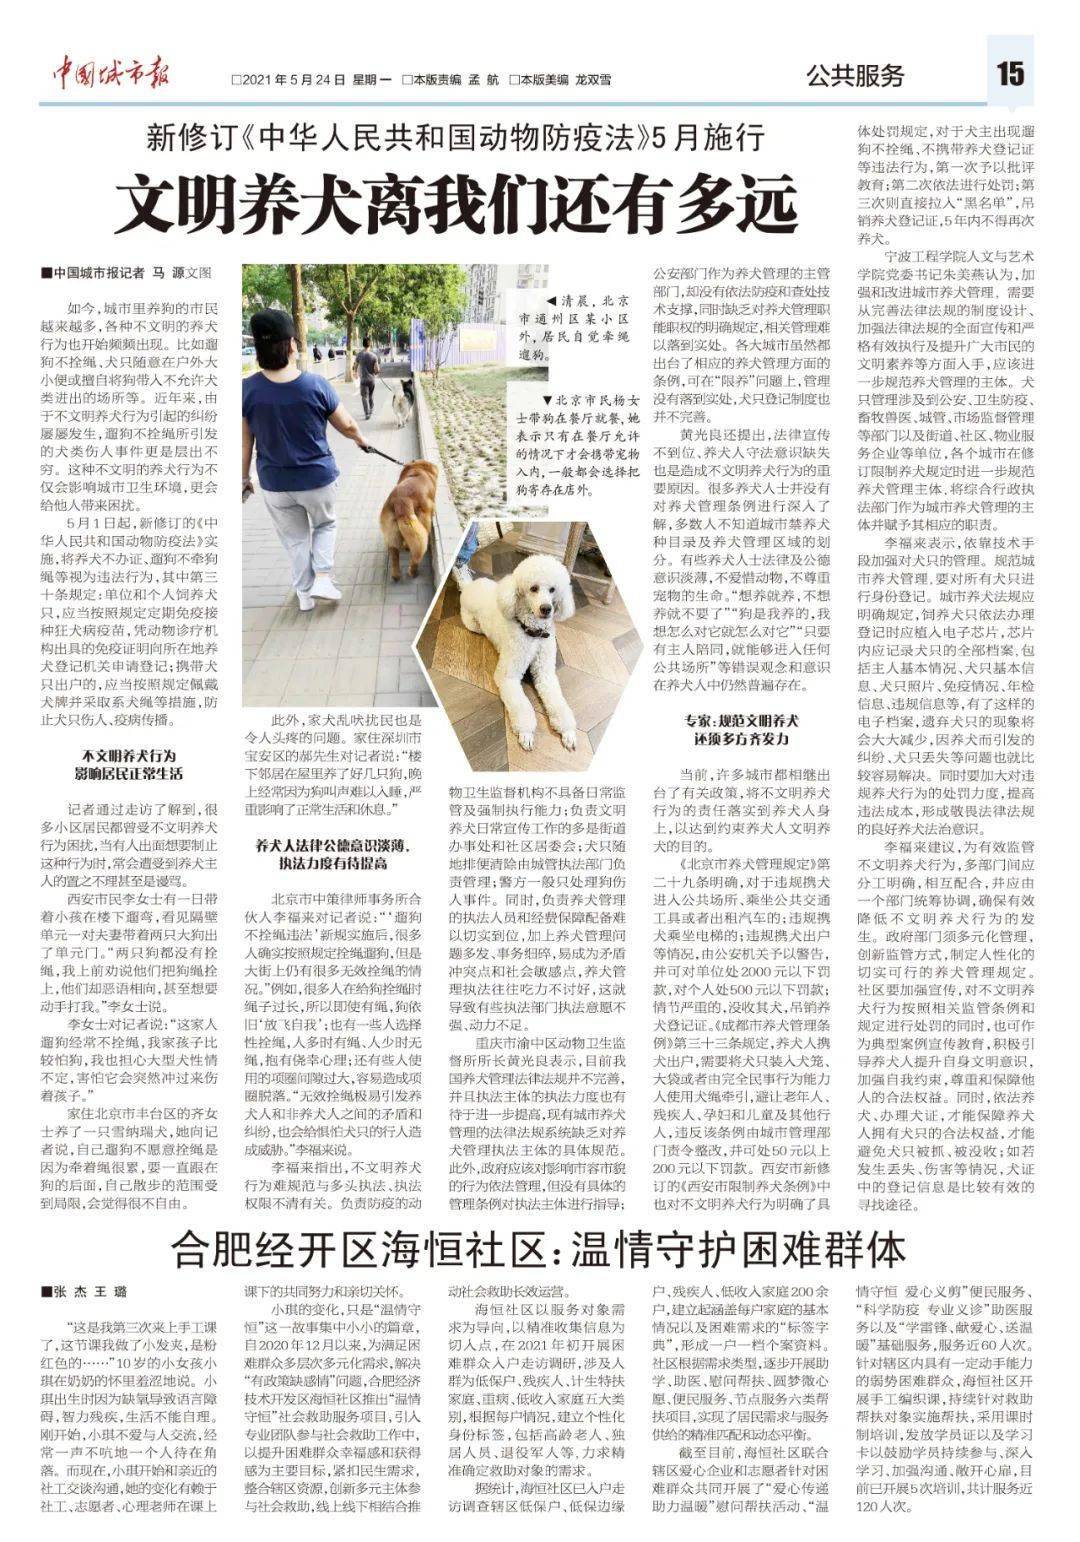 新修订 中华人民共和国动物防疫法 已施行 文明养犬离我们还有多远 执法